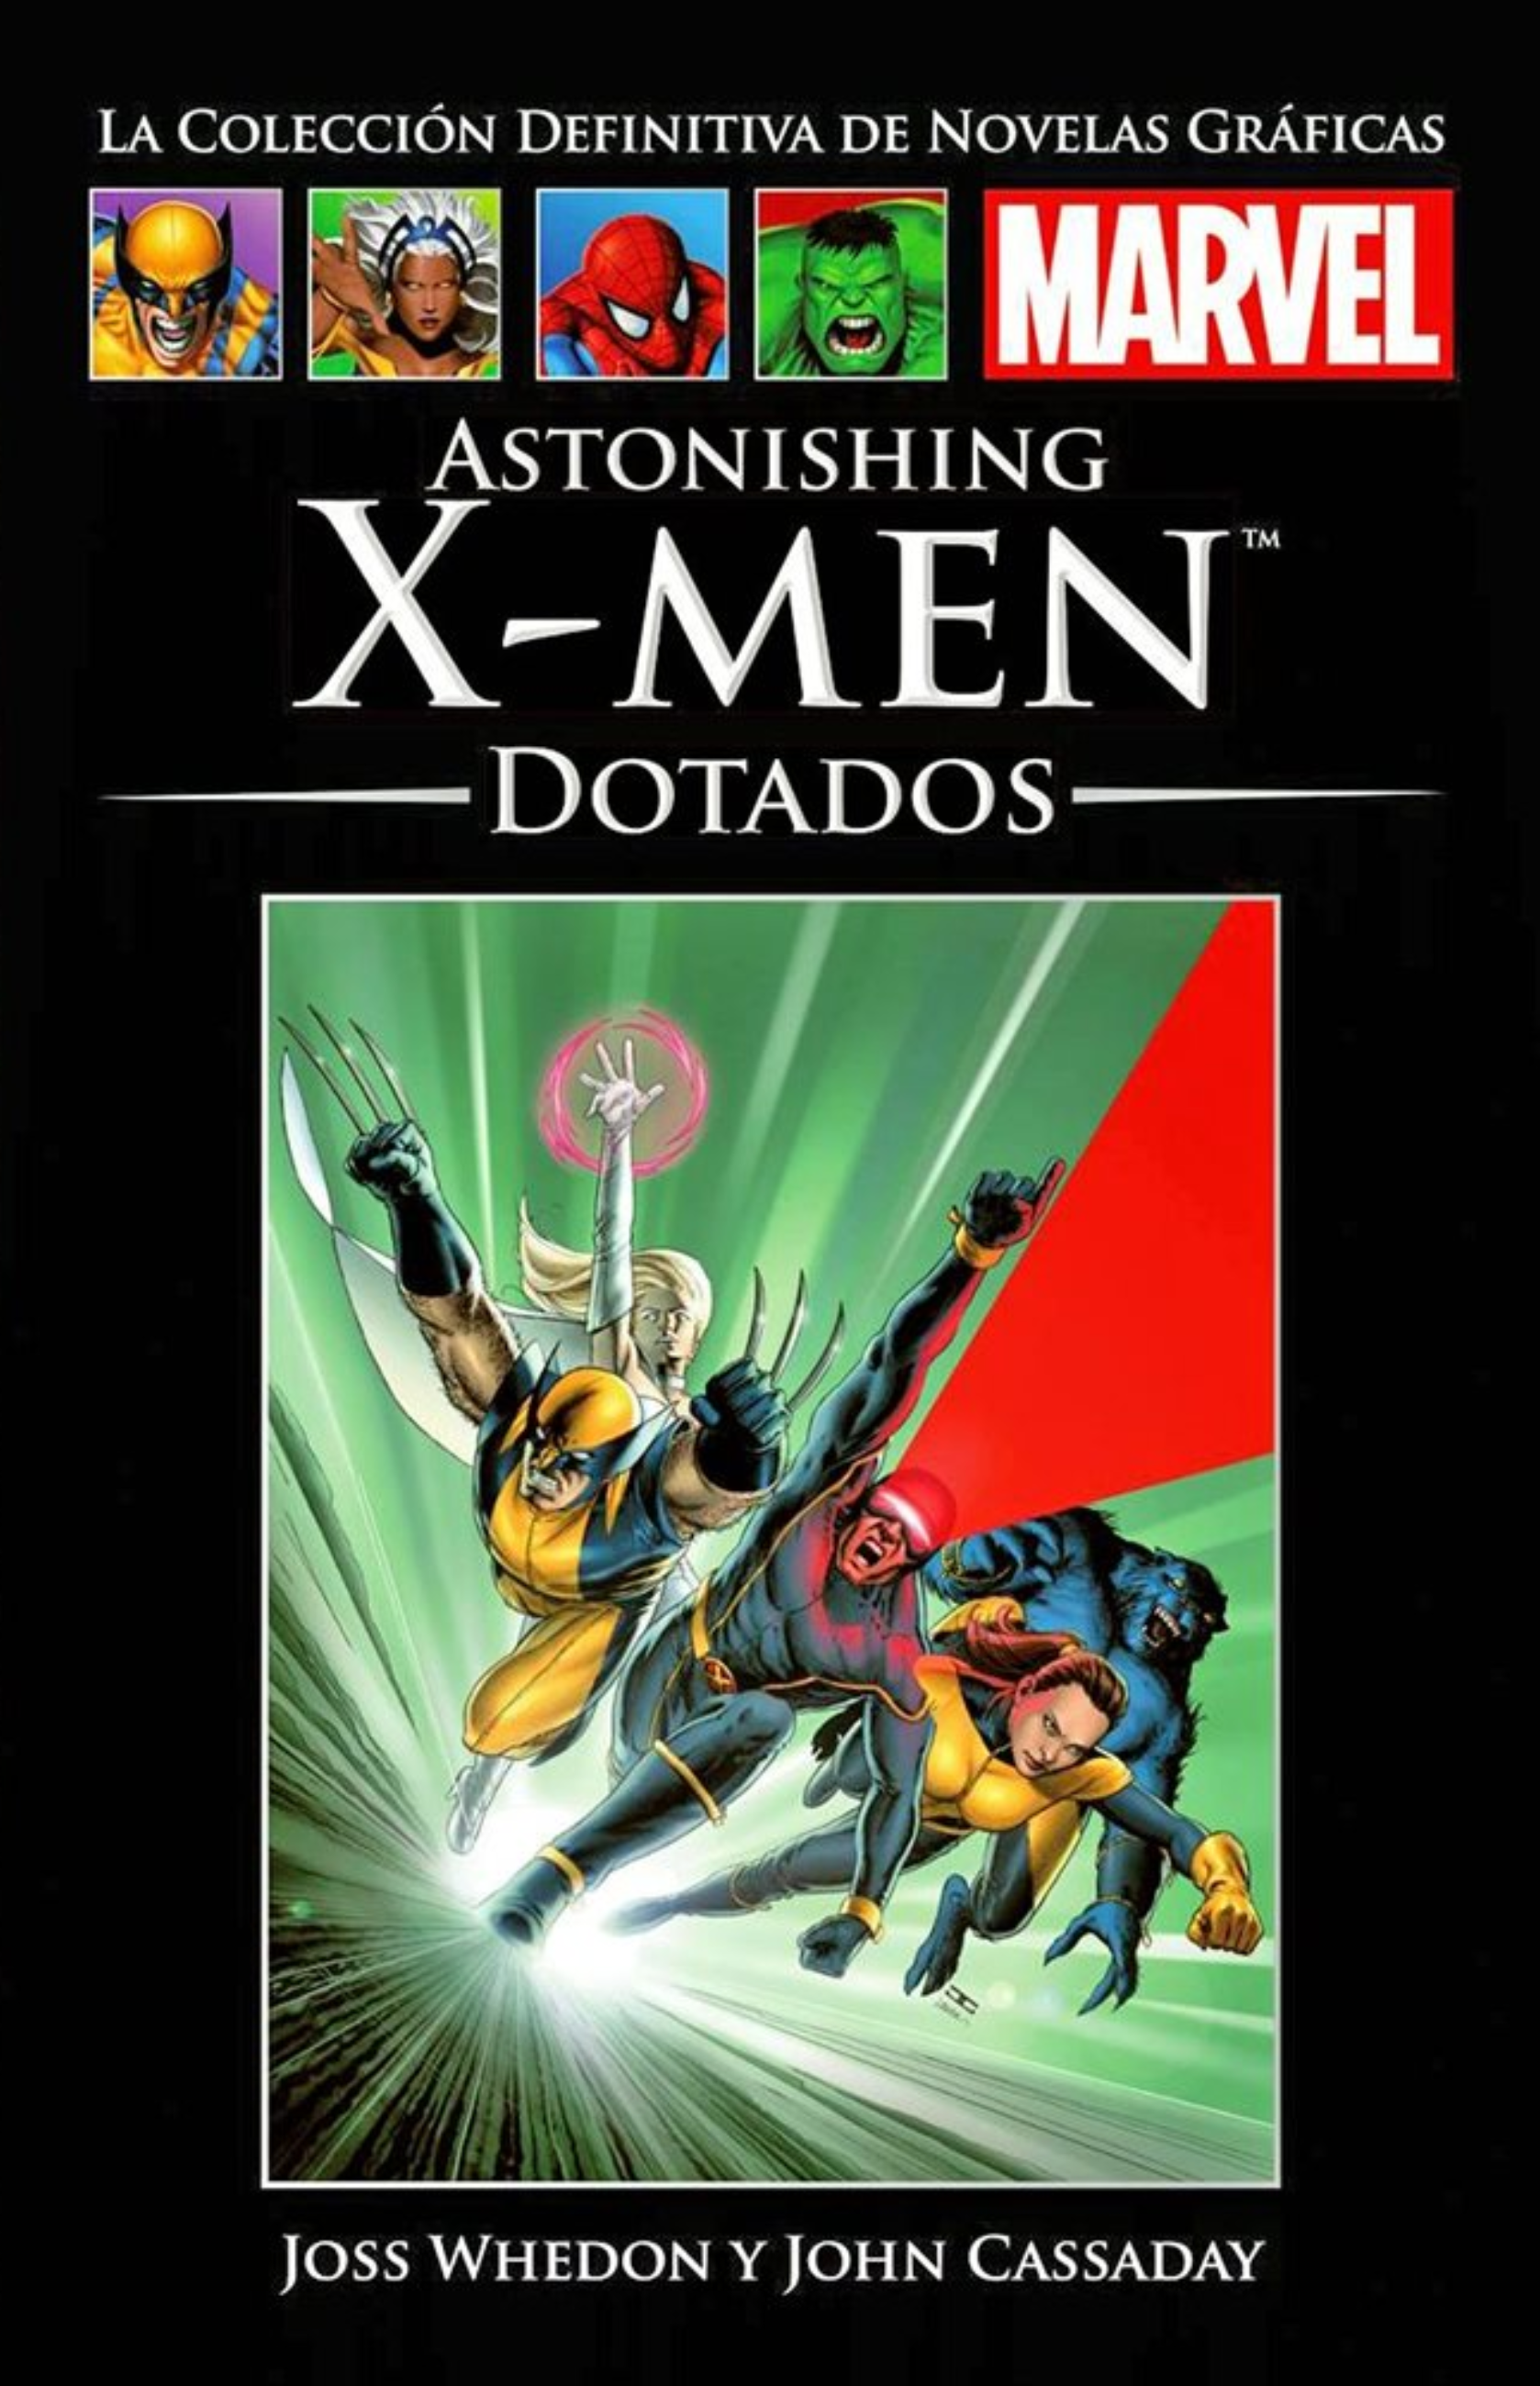 Astonishing X-Men, dotados